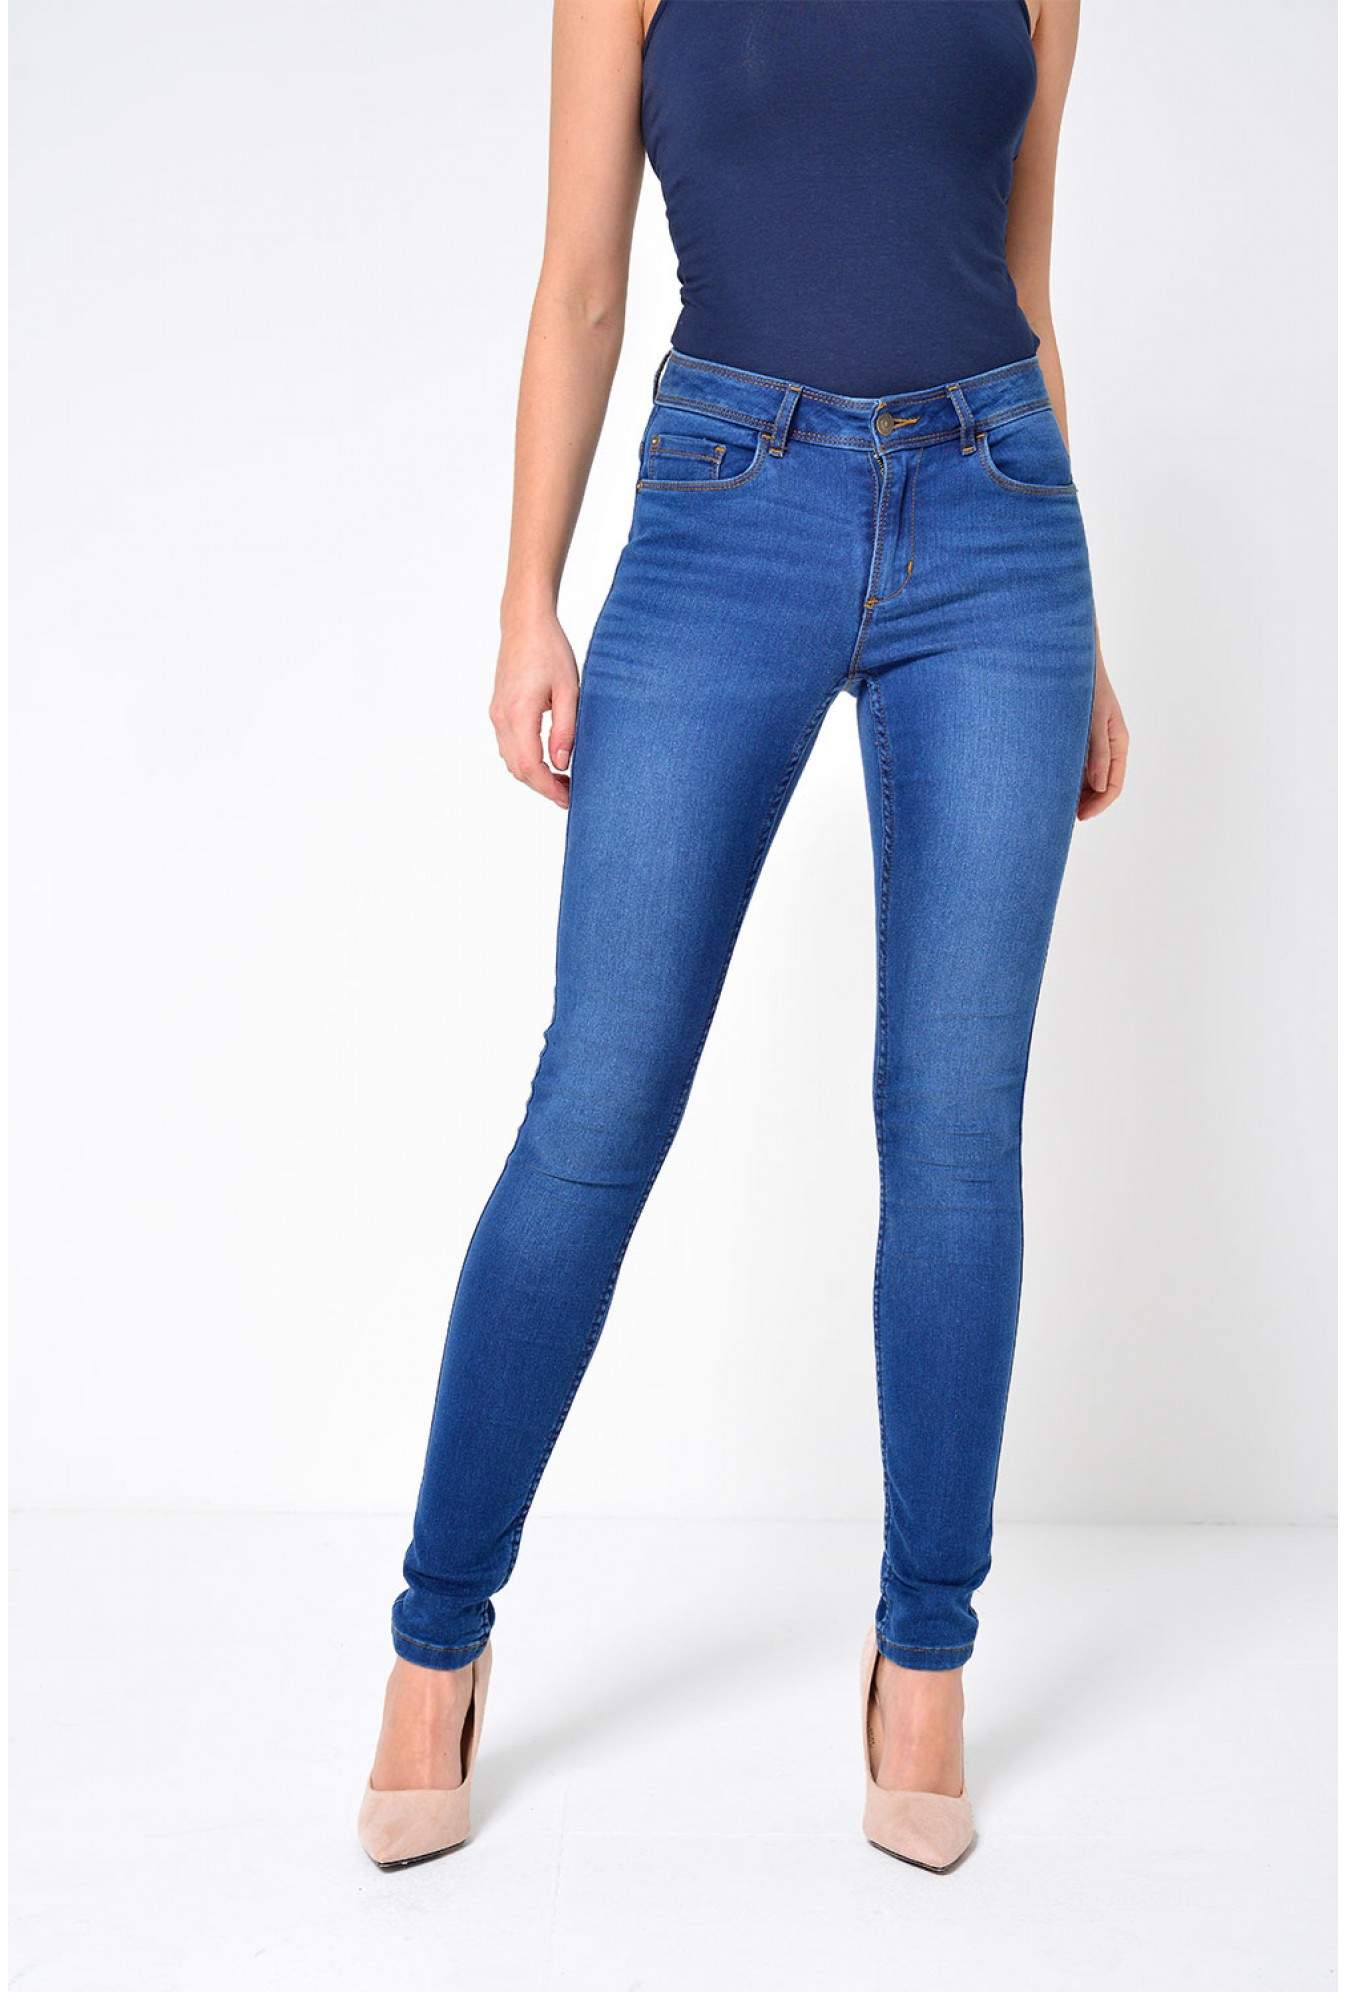 long length skinny jeans